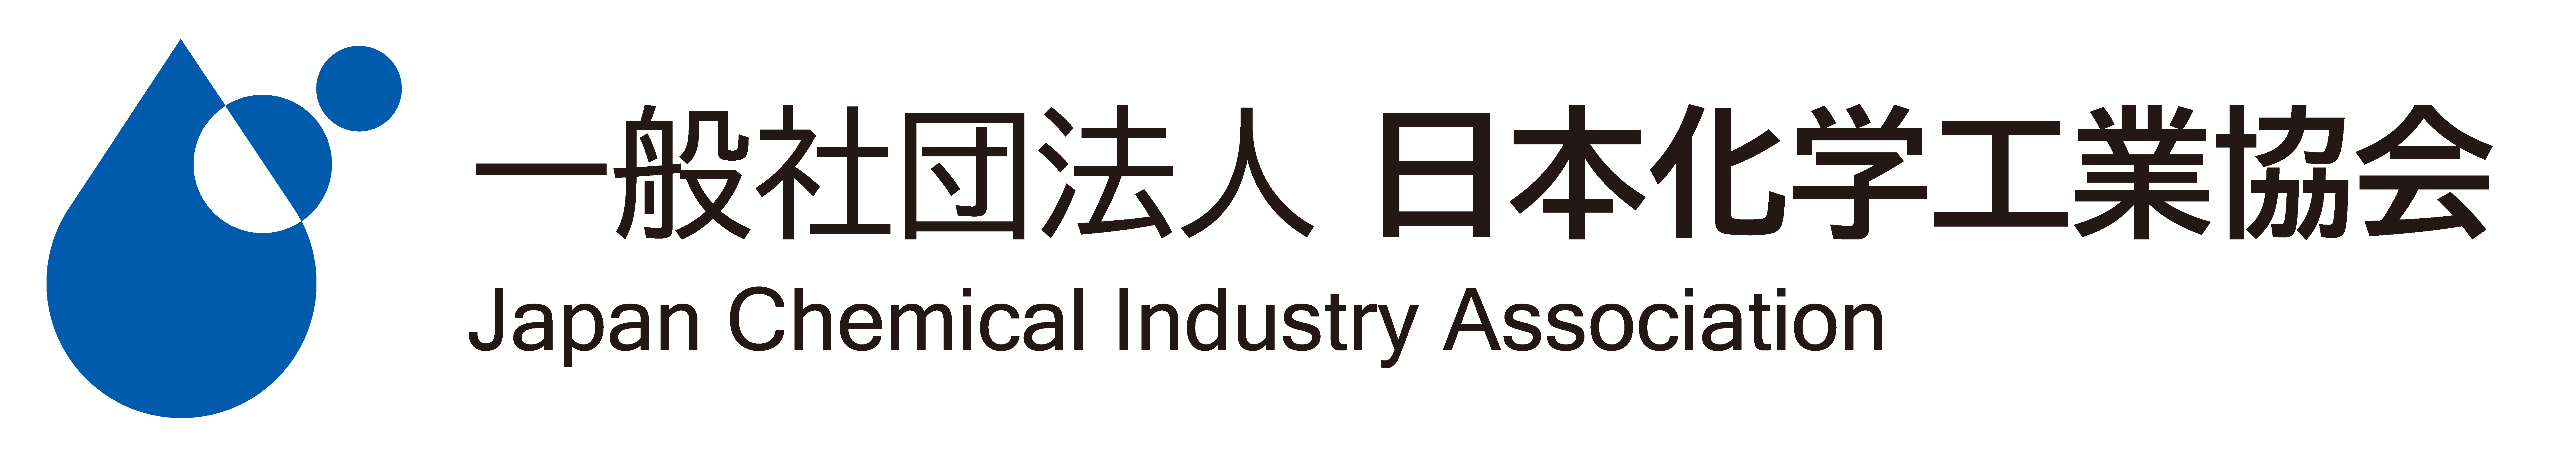 JCIA 一般社団法人 日本化学工業協会